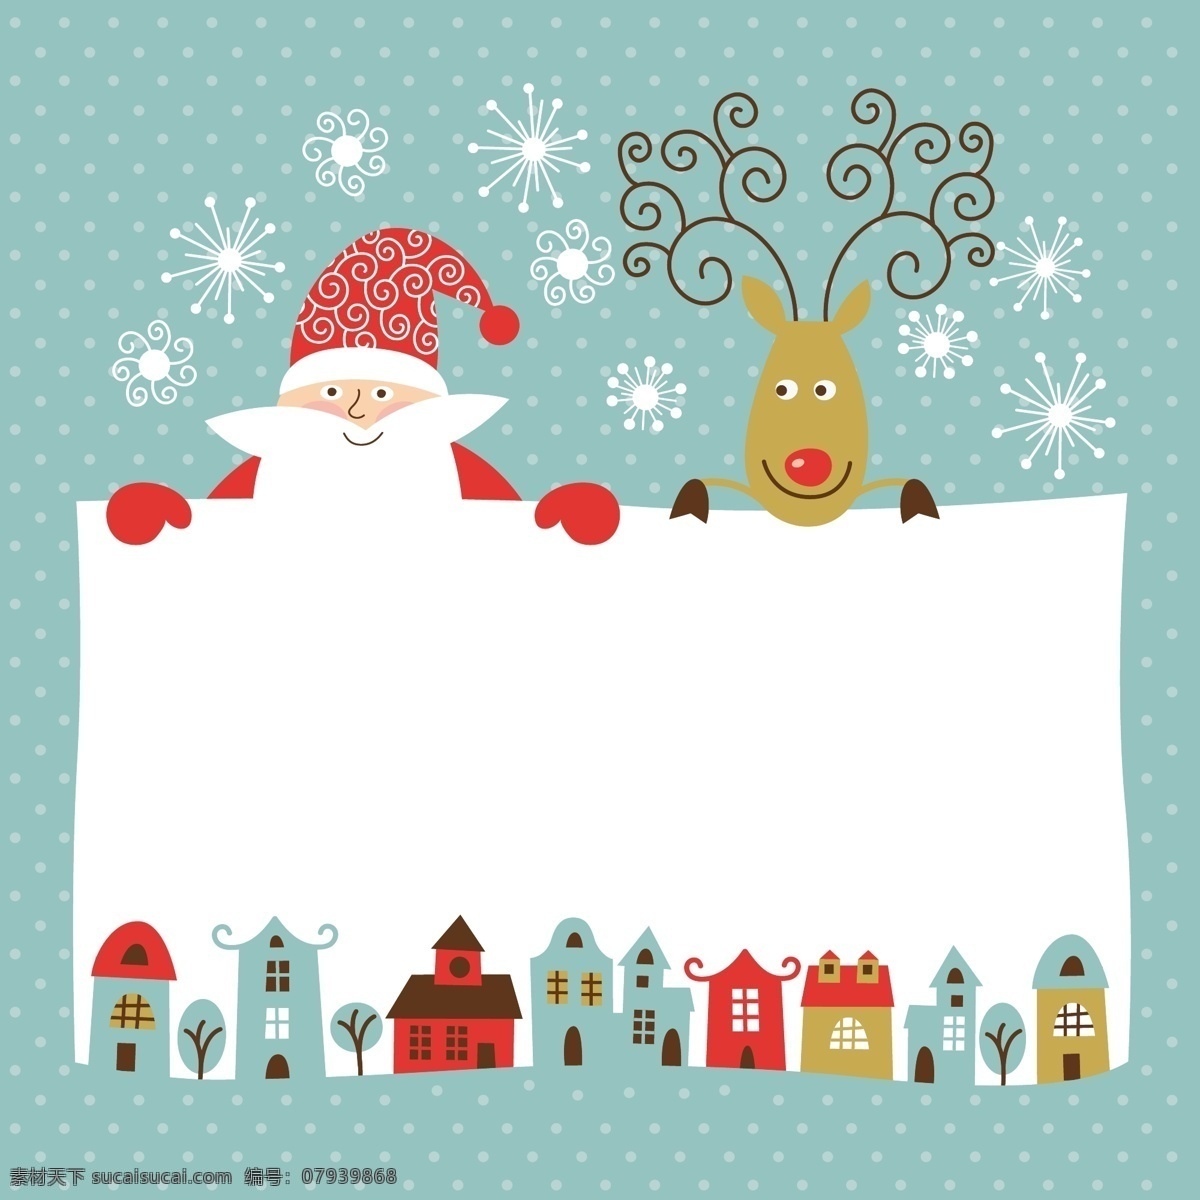 矢量 卡通 圣诞 元素 边框 房屋 圣诞节 圣诞老人 雪花 卡通麋鹿 海报 其他海报设计